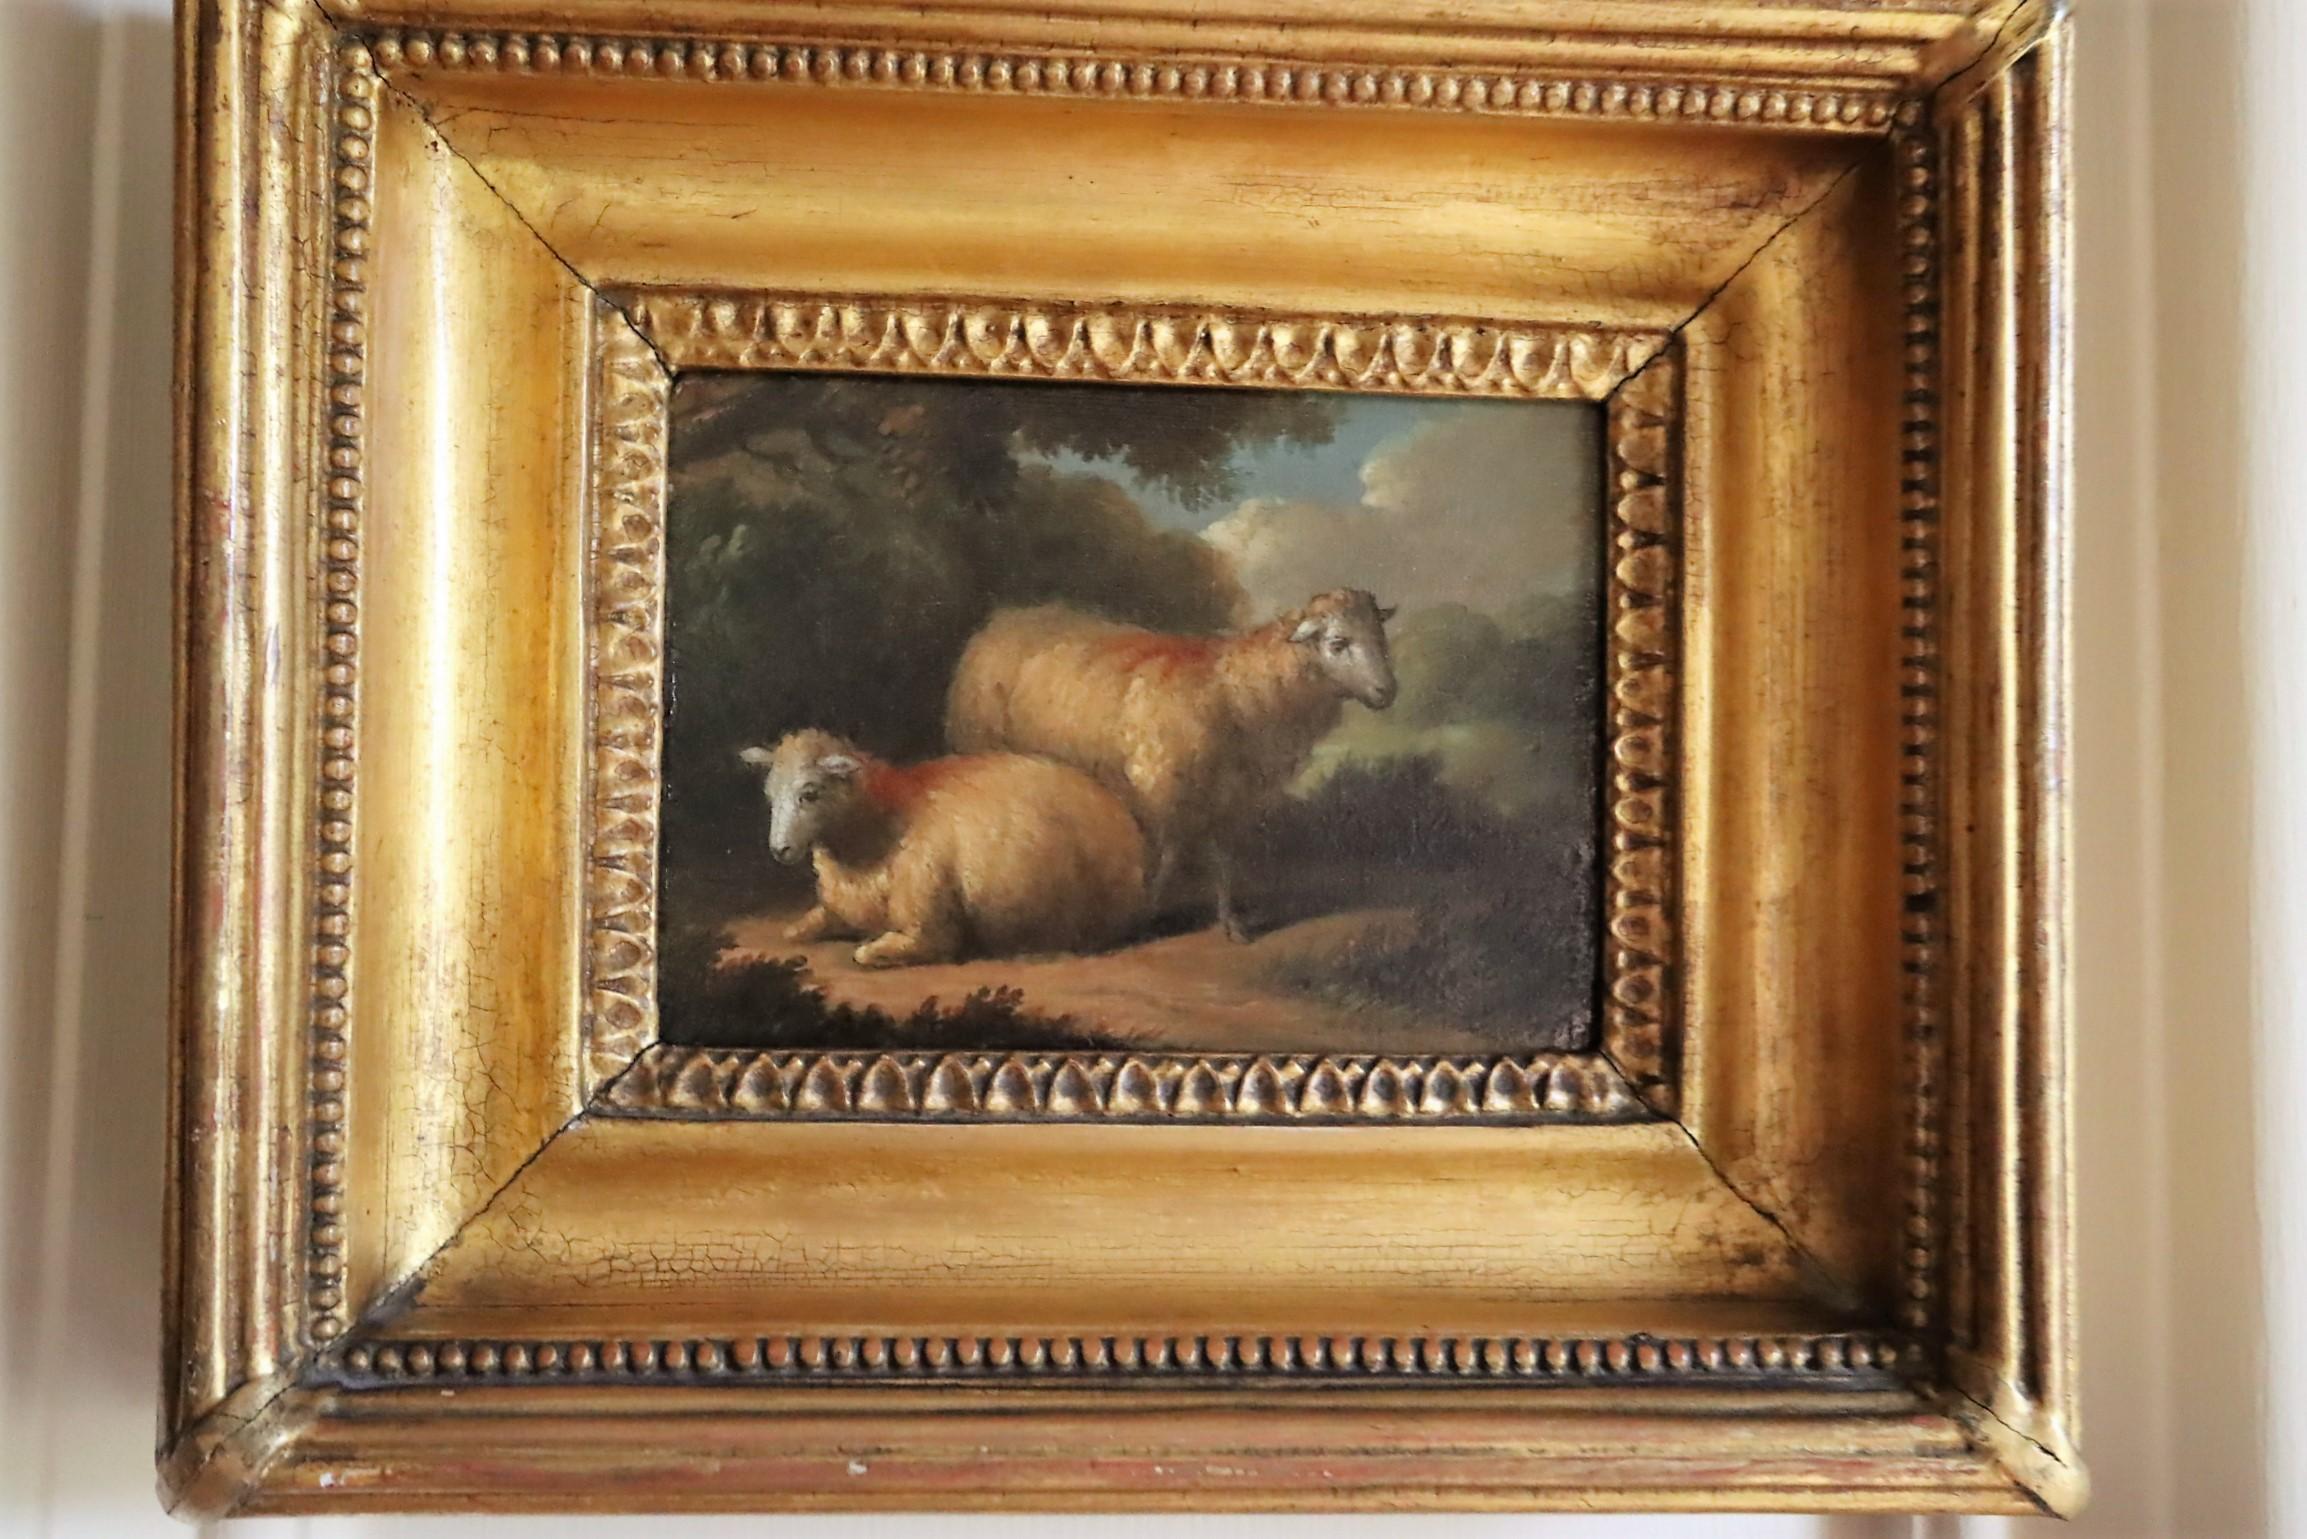 George Morland
Une paire de tableaux magnifiques, l'un représentant deux moutons et l'autre deux épagneuls.
Huile sur panneau
4 1/2 x 6 1/4 pouces Toile
8 1/2 x 10 pouces Encadré
GM.